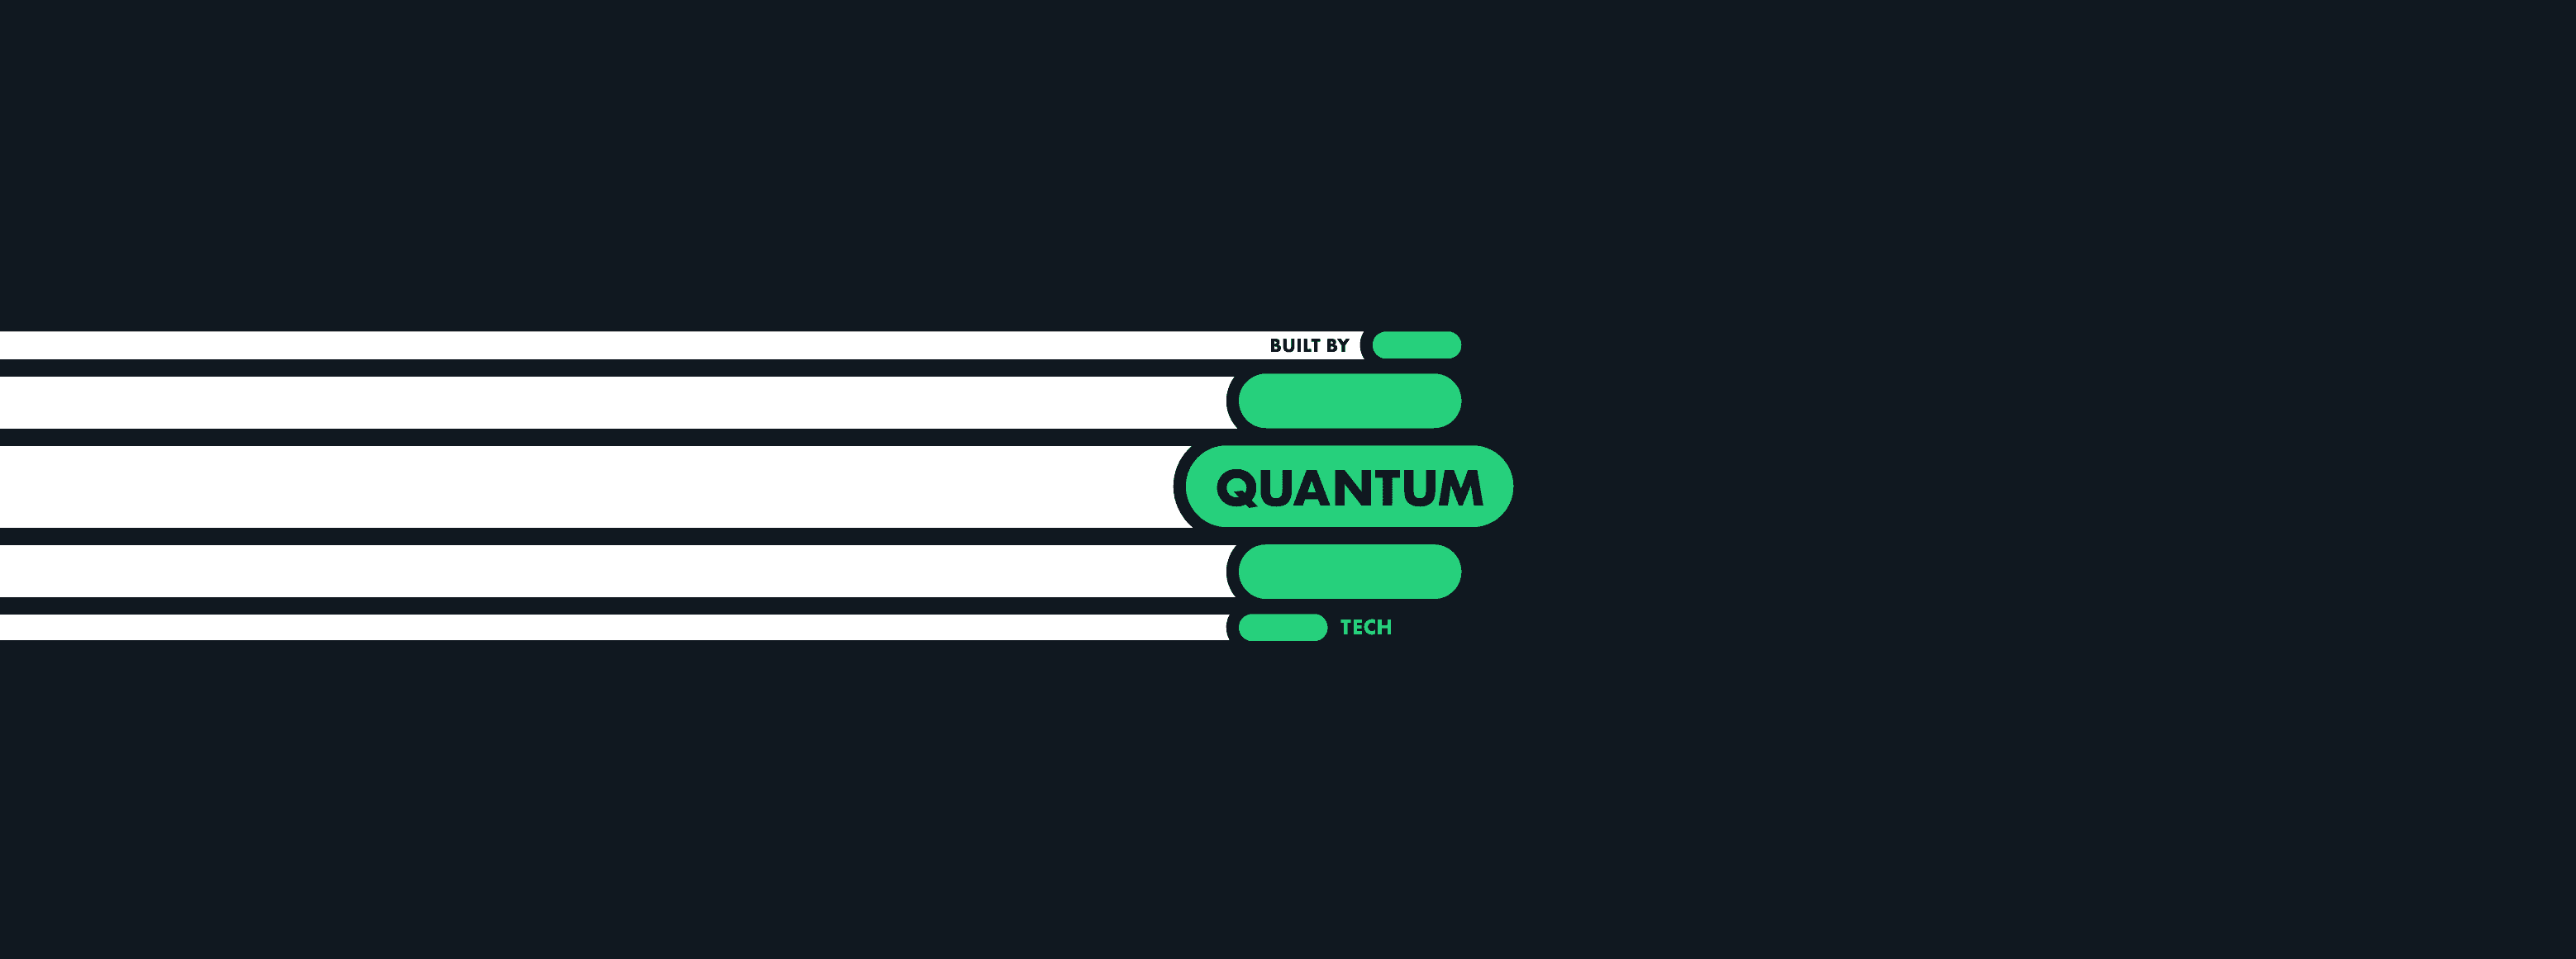 QuantumTECH banner